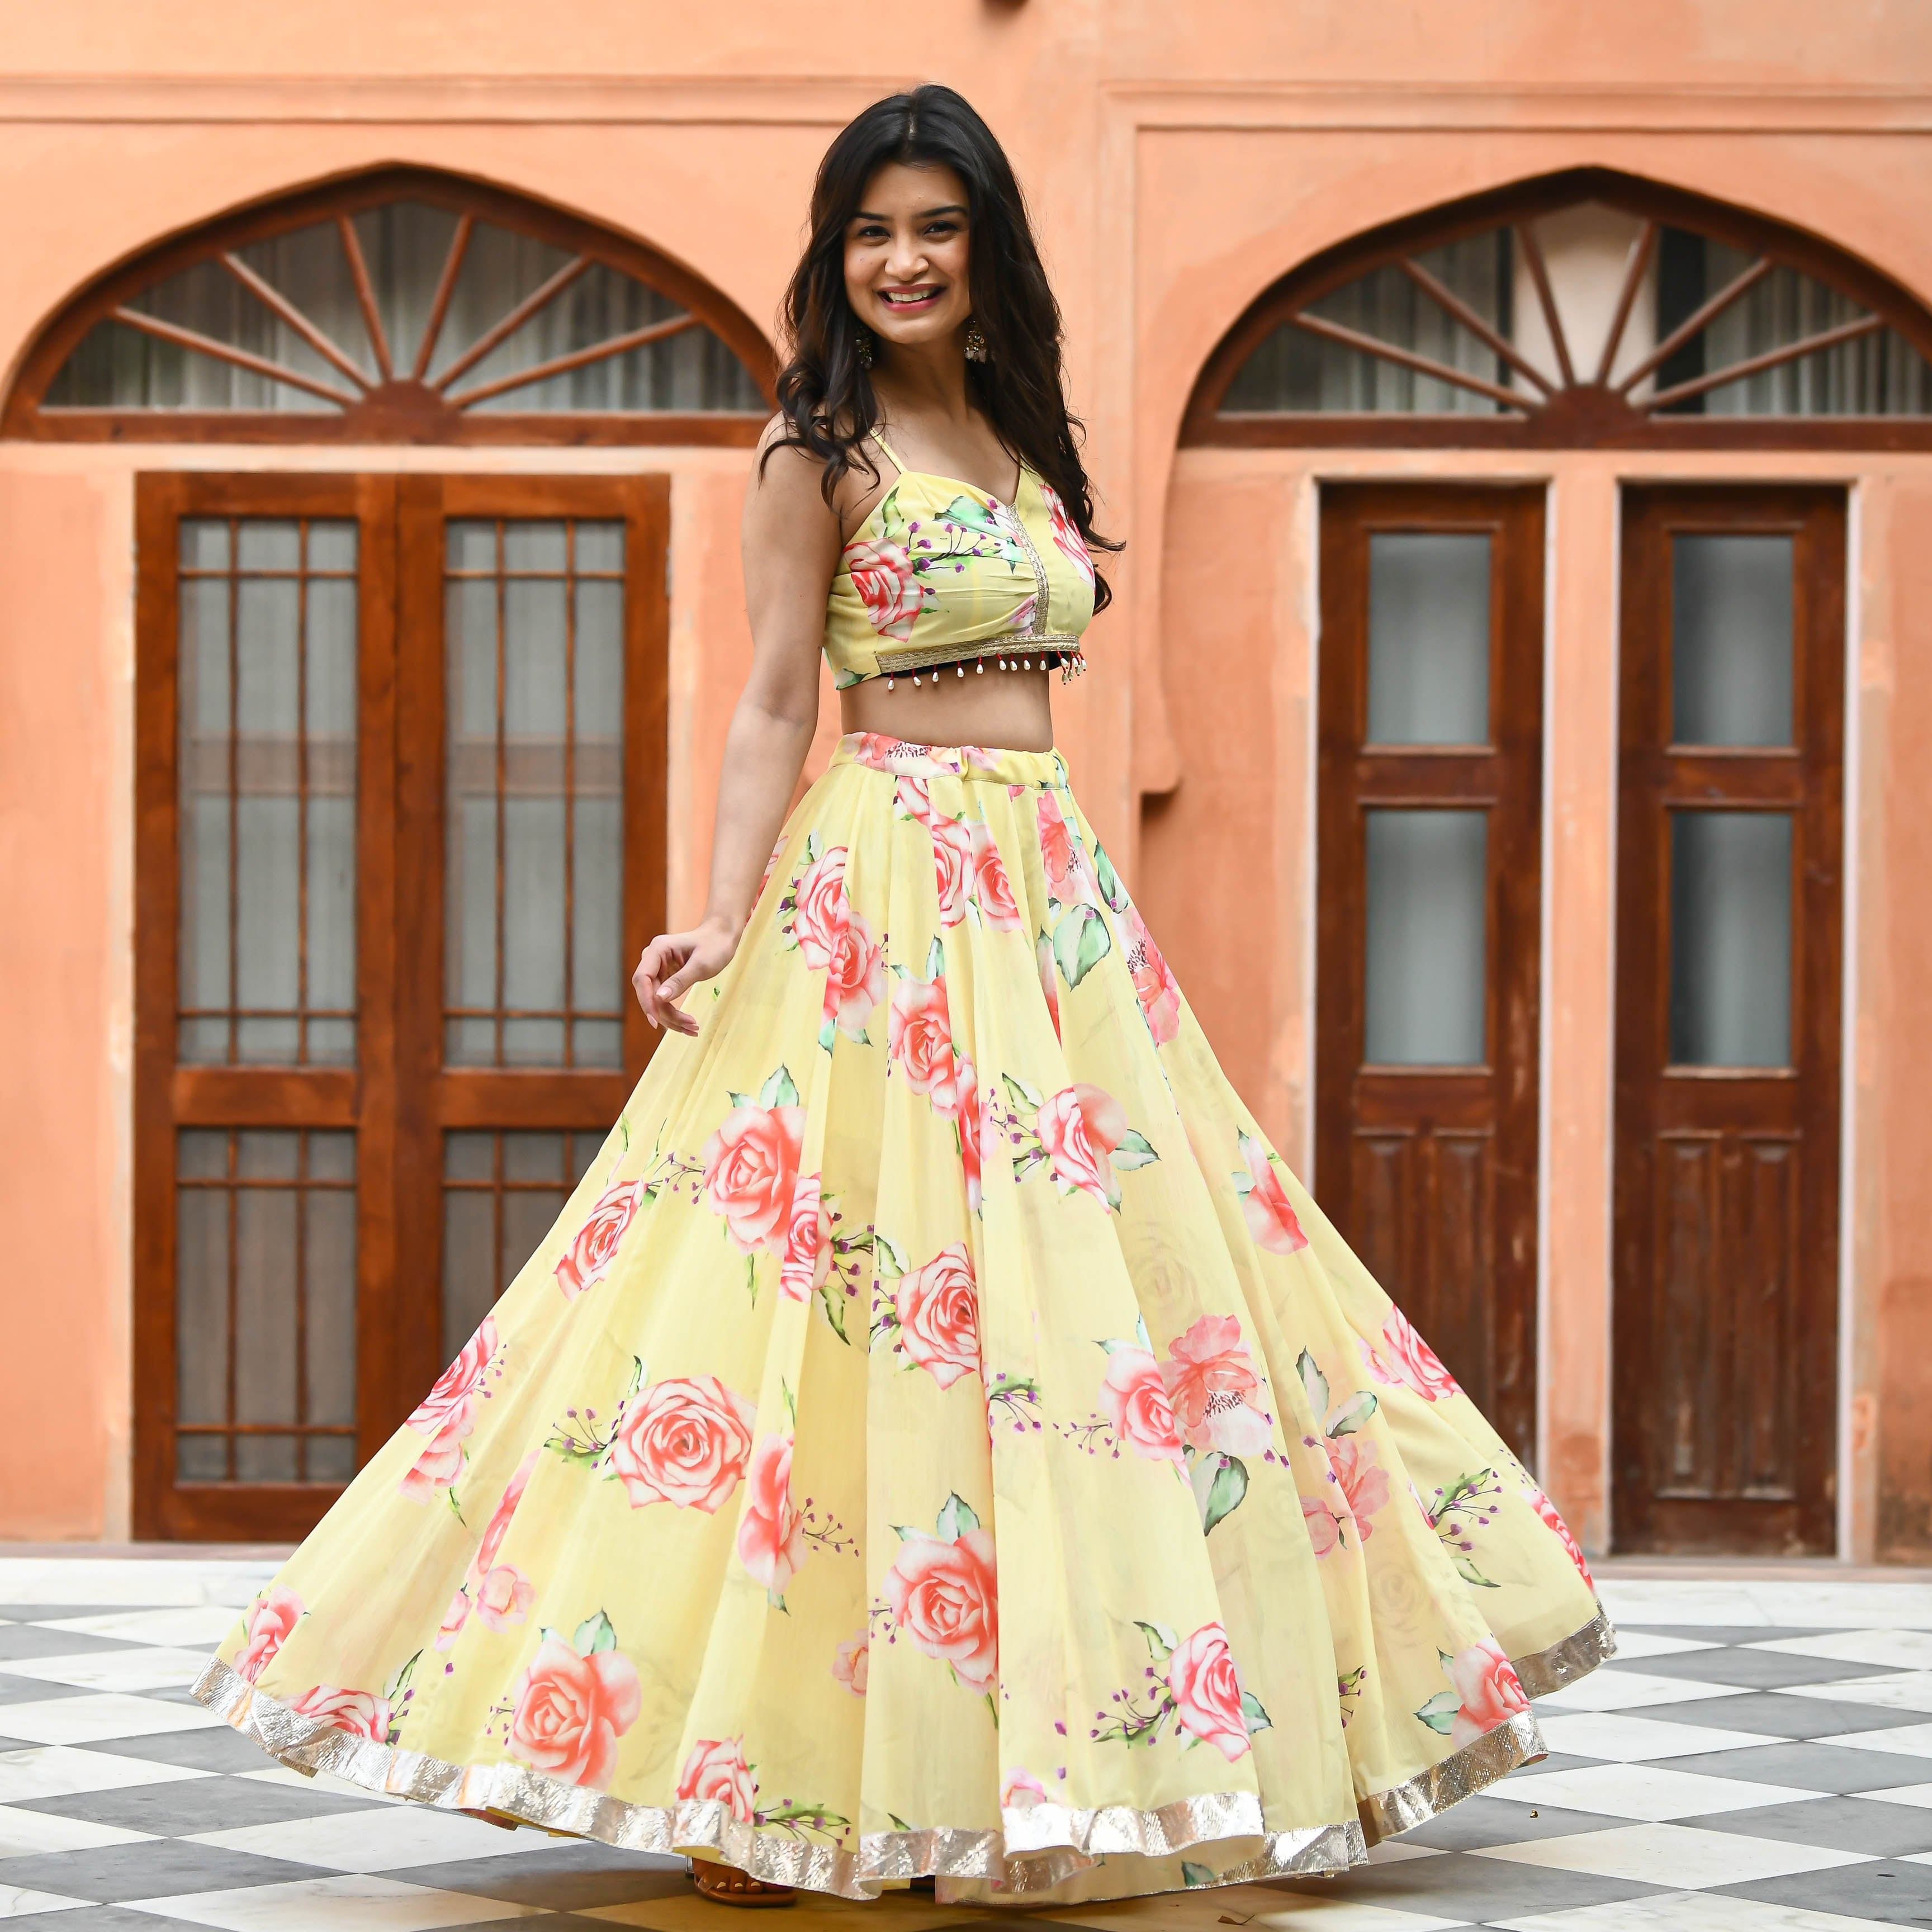 Crop top lehenga | lehenga designs latest | long skirts for women | party wear  lehenga | Lehenga designs simple, Long skirt top designs, Indian bridesmaid  dresses